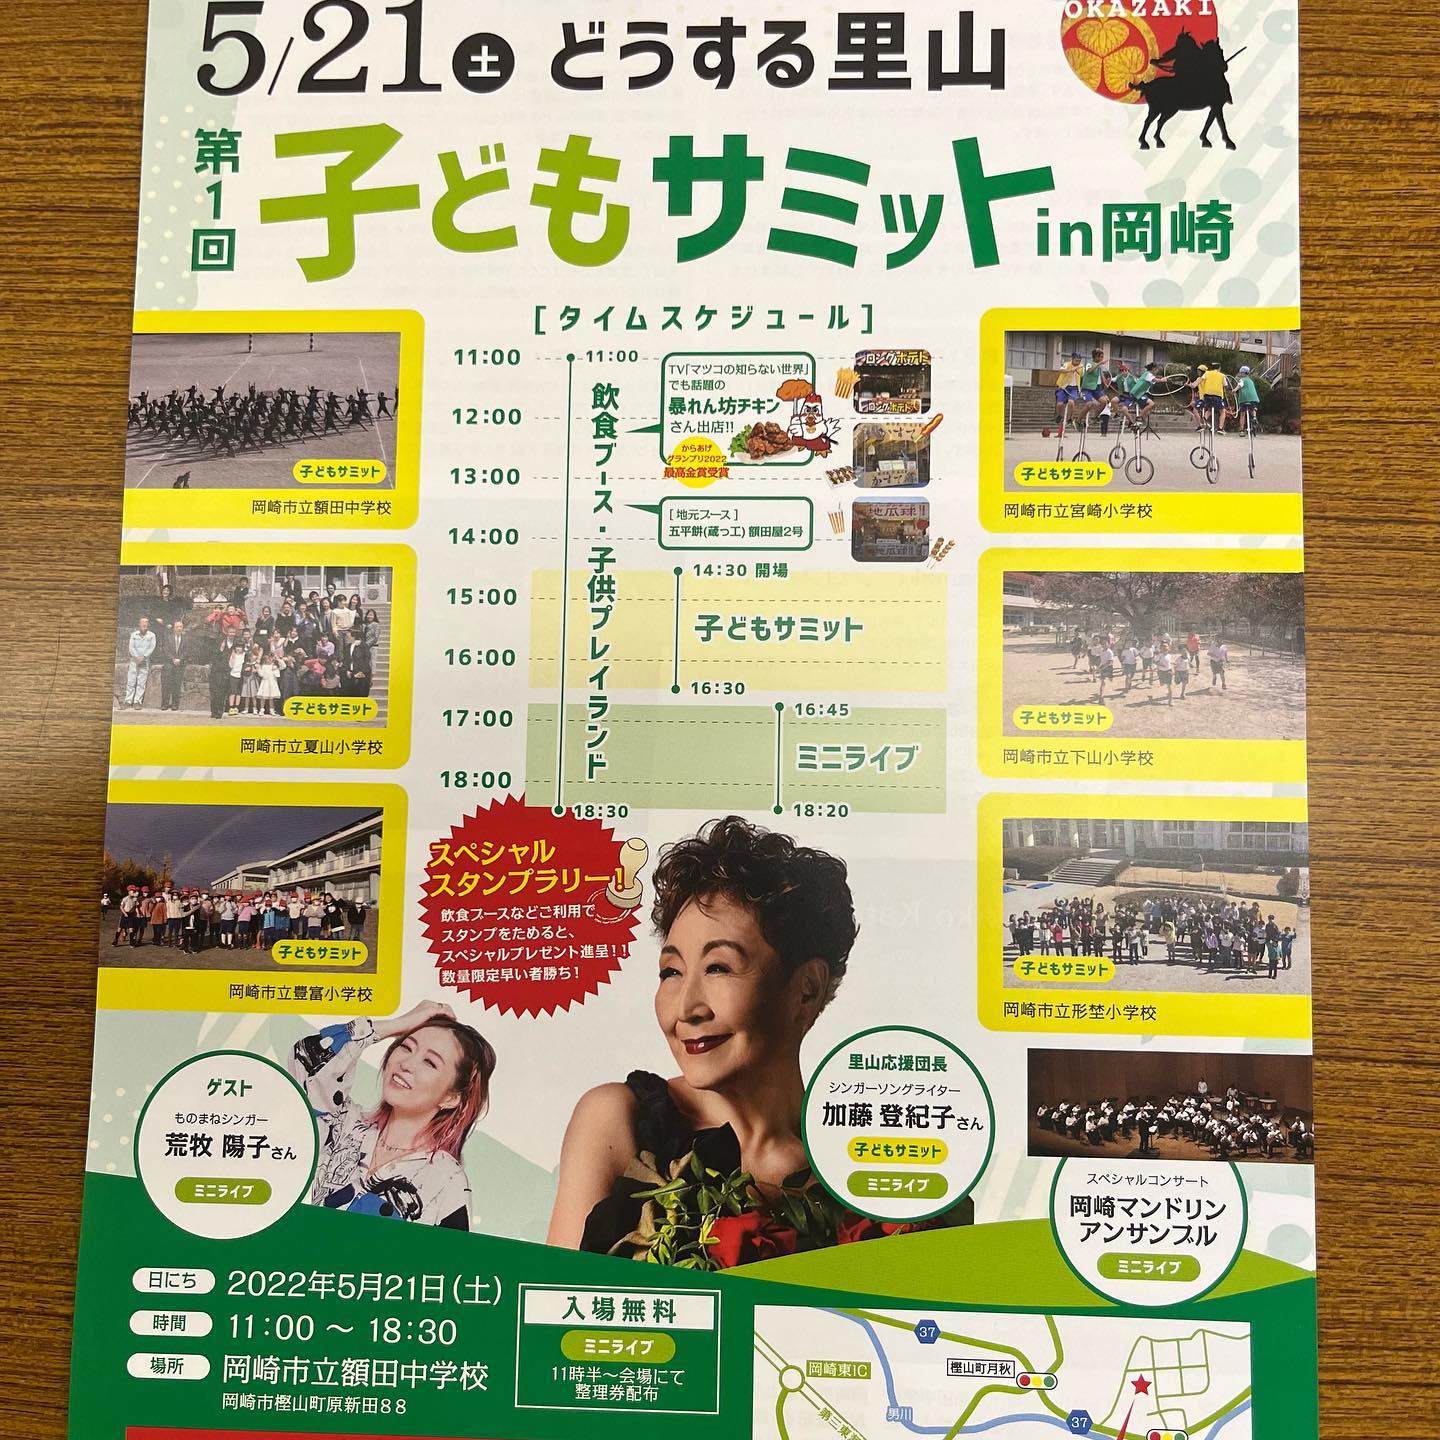 が額田中学校で開催されます。
地元産のハチミツを使用したスイーツを販売しようと計画中です。
本宿駅、高木製作所からシャトルバスが運行されます。是非ご参加ください。